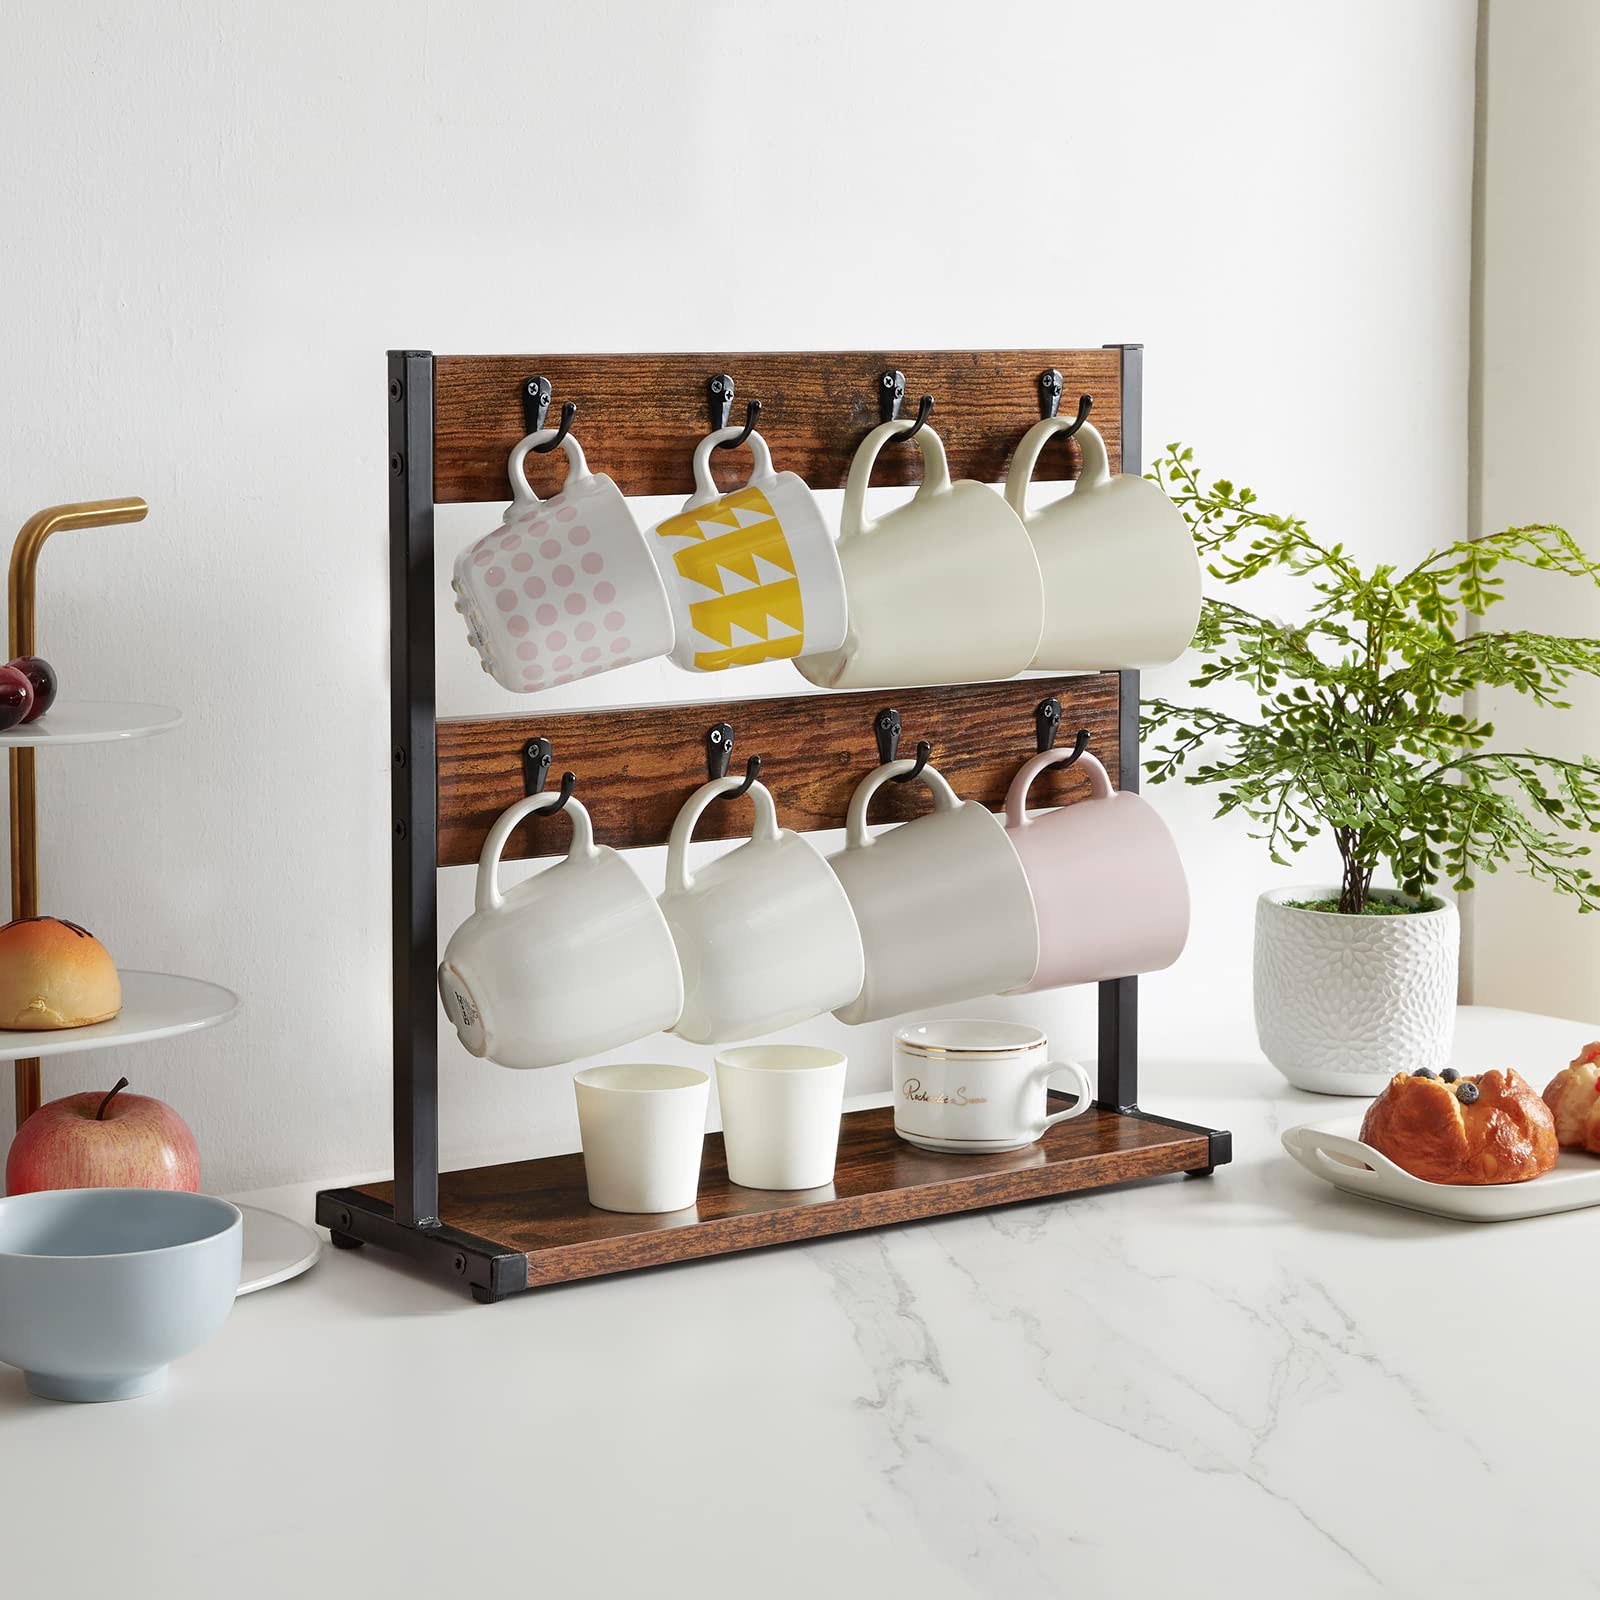 Comment intégrer des mugs dans une décoration de cuisine ?